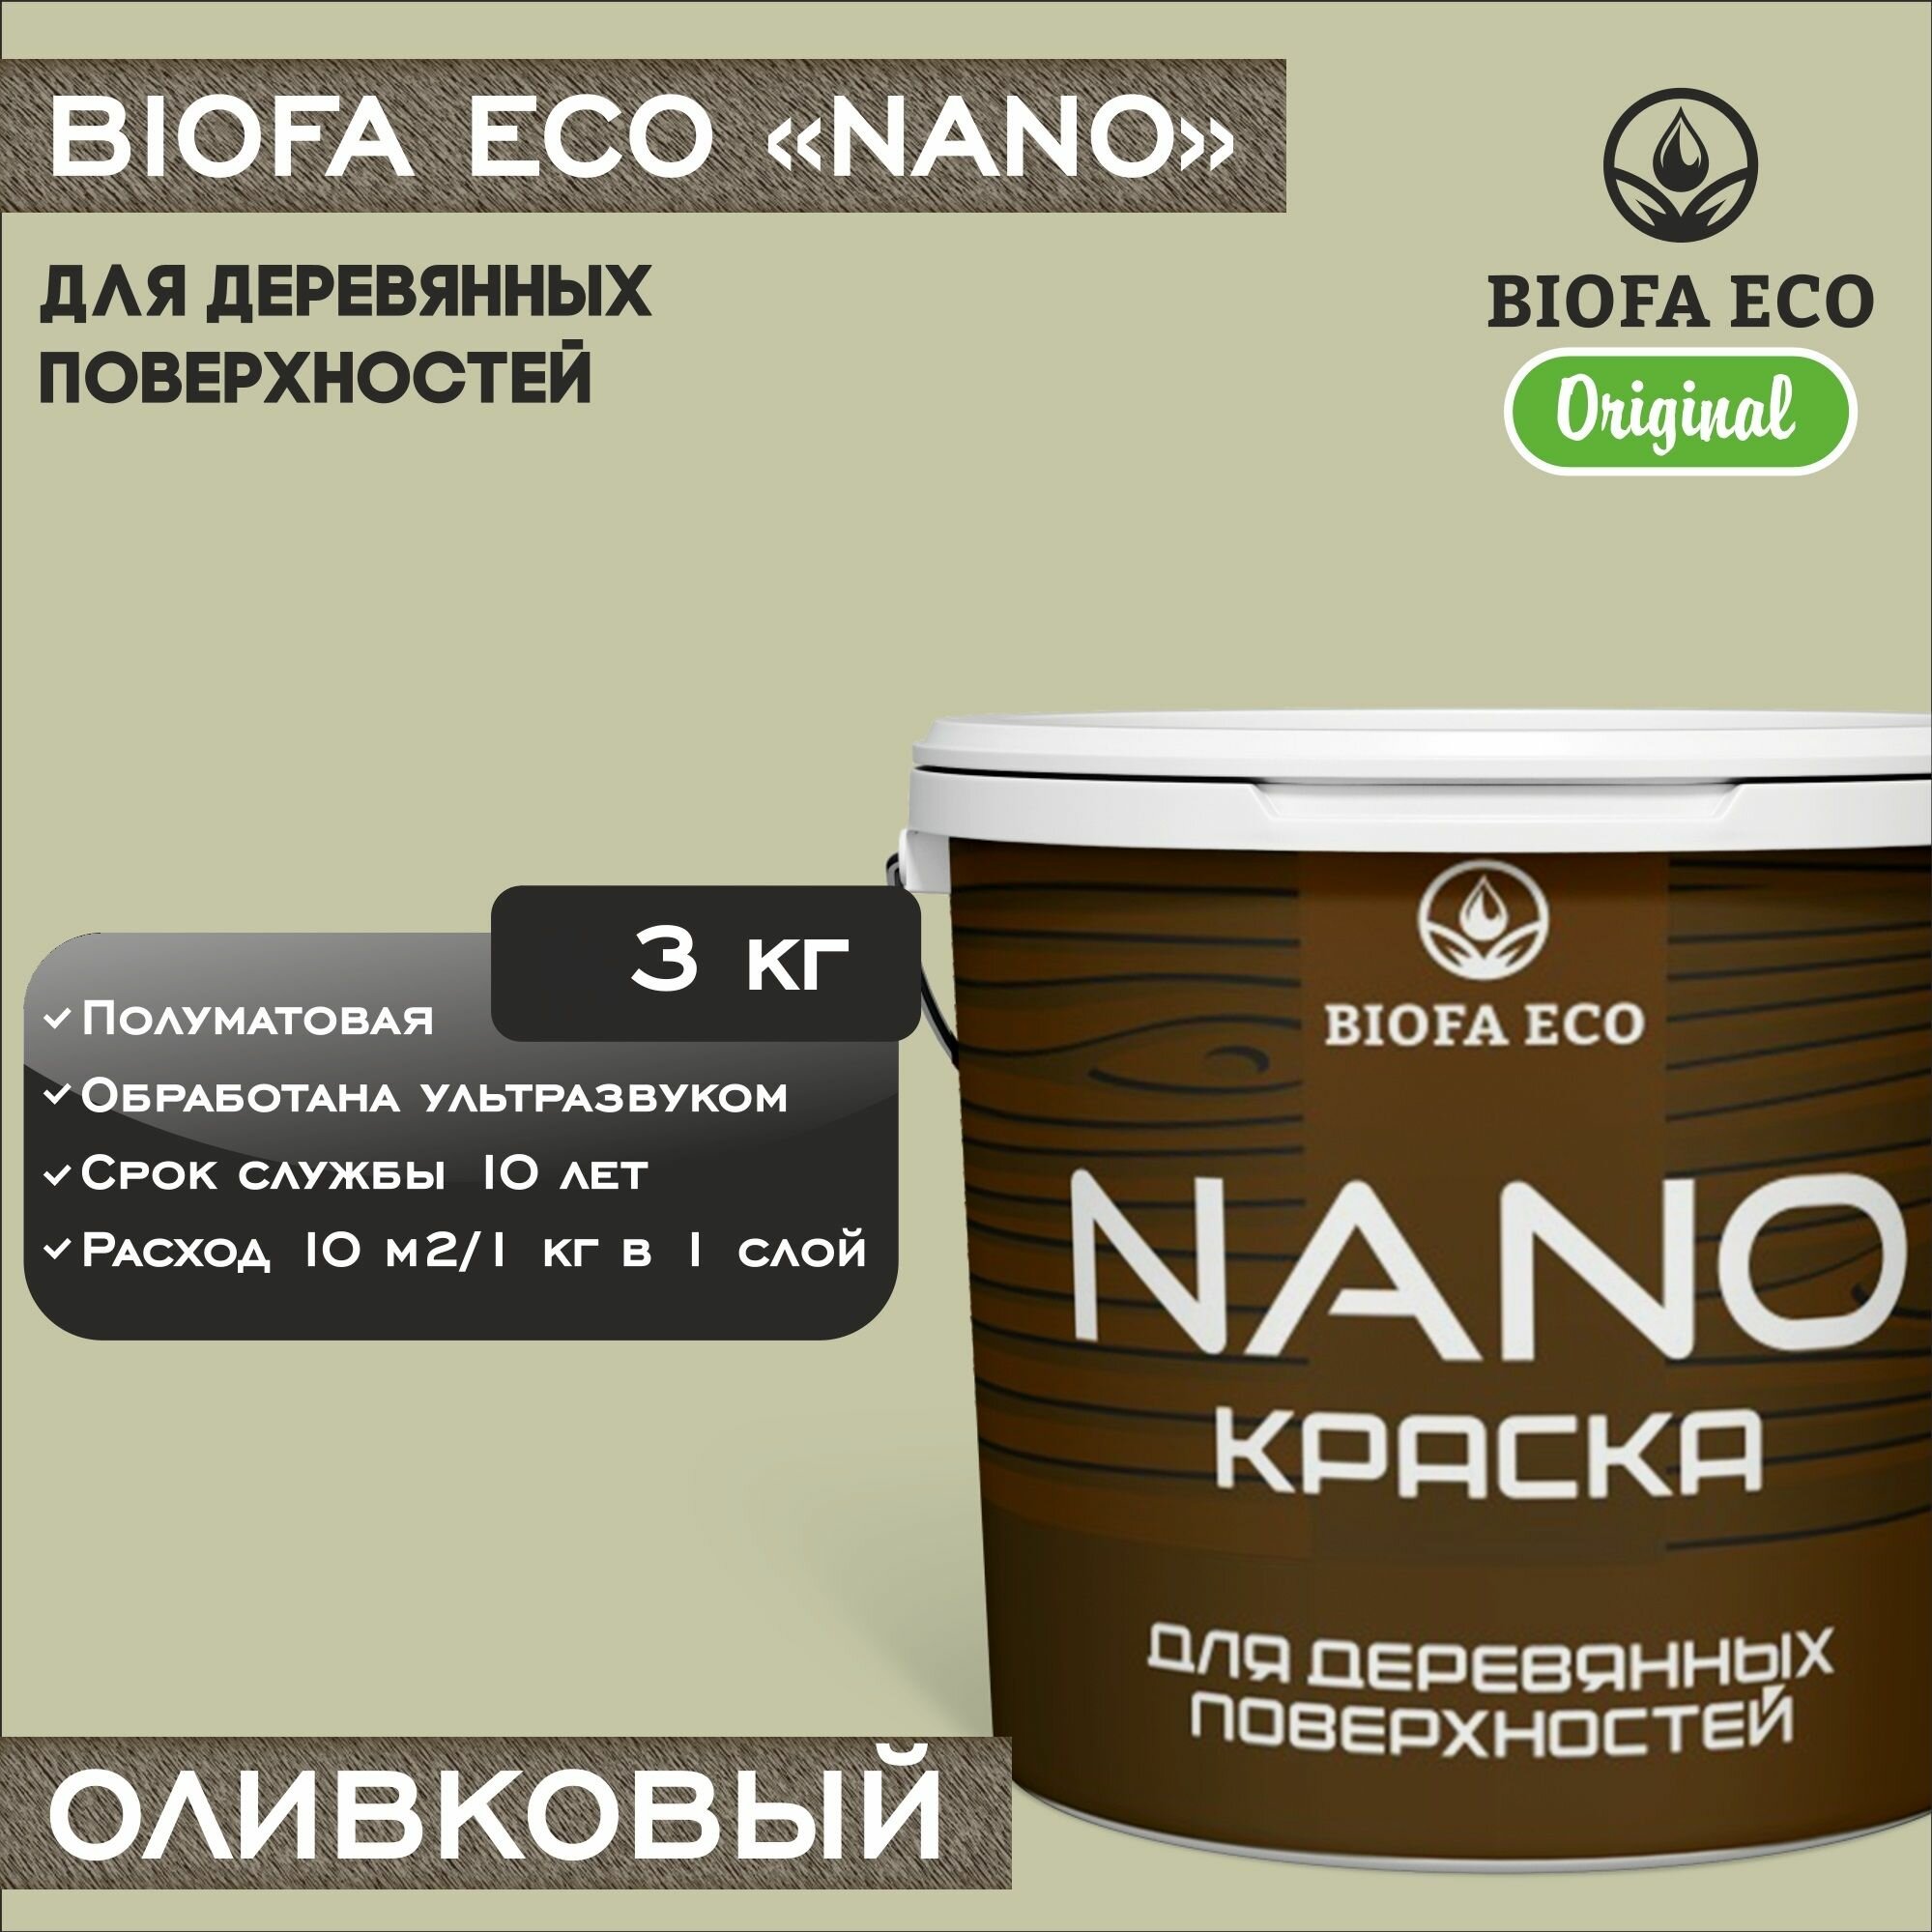 Краска BIOFA ECO NANO для деревянных поверхностей, укривистая, полуматовая, цвет оливковый, 3 кг